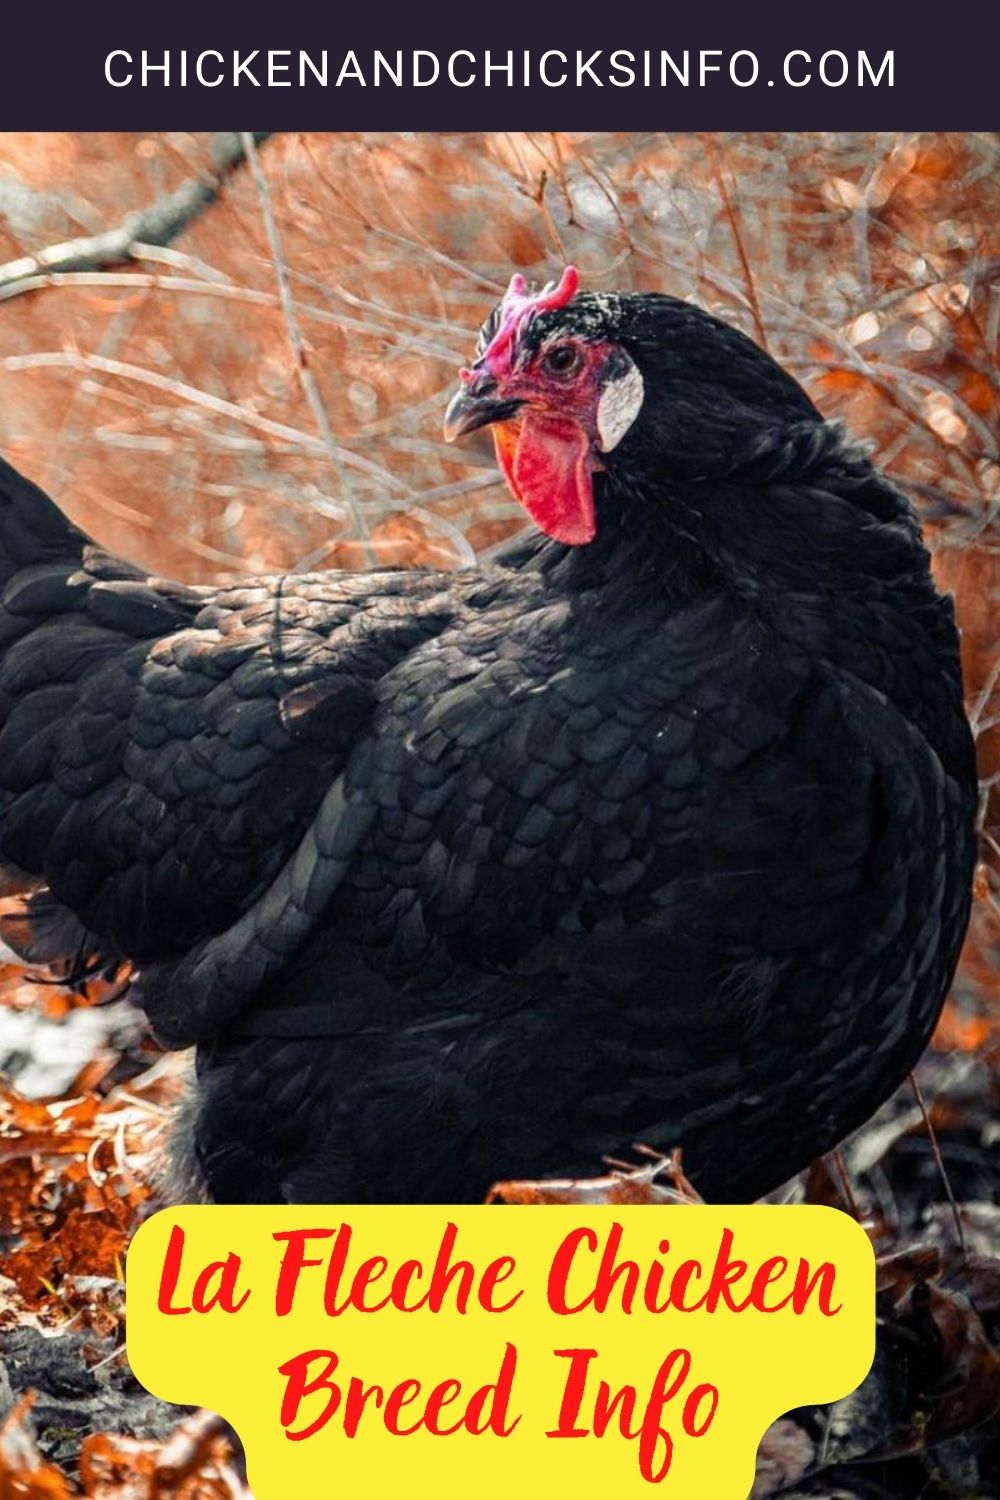 La Fleche Chicken Breed Info pinterest image.